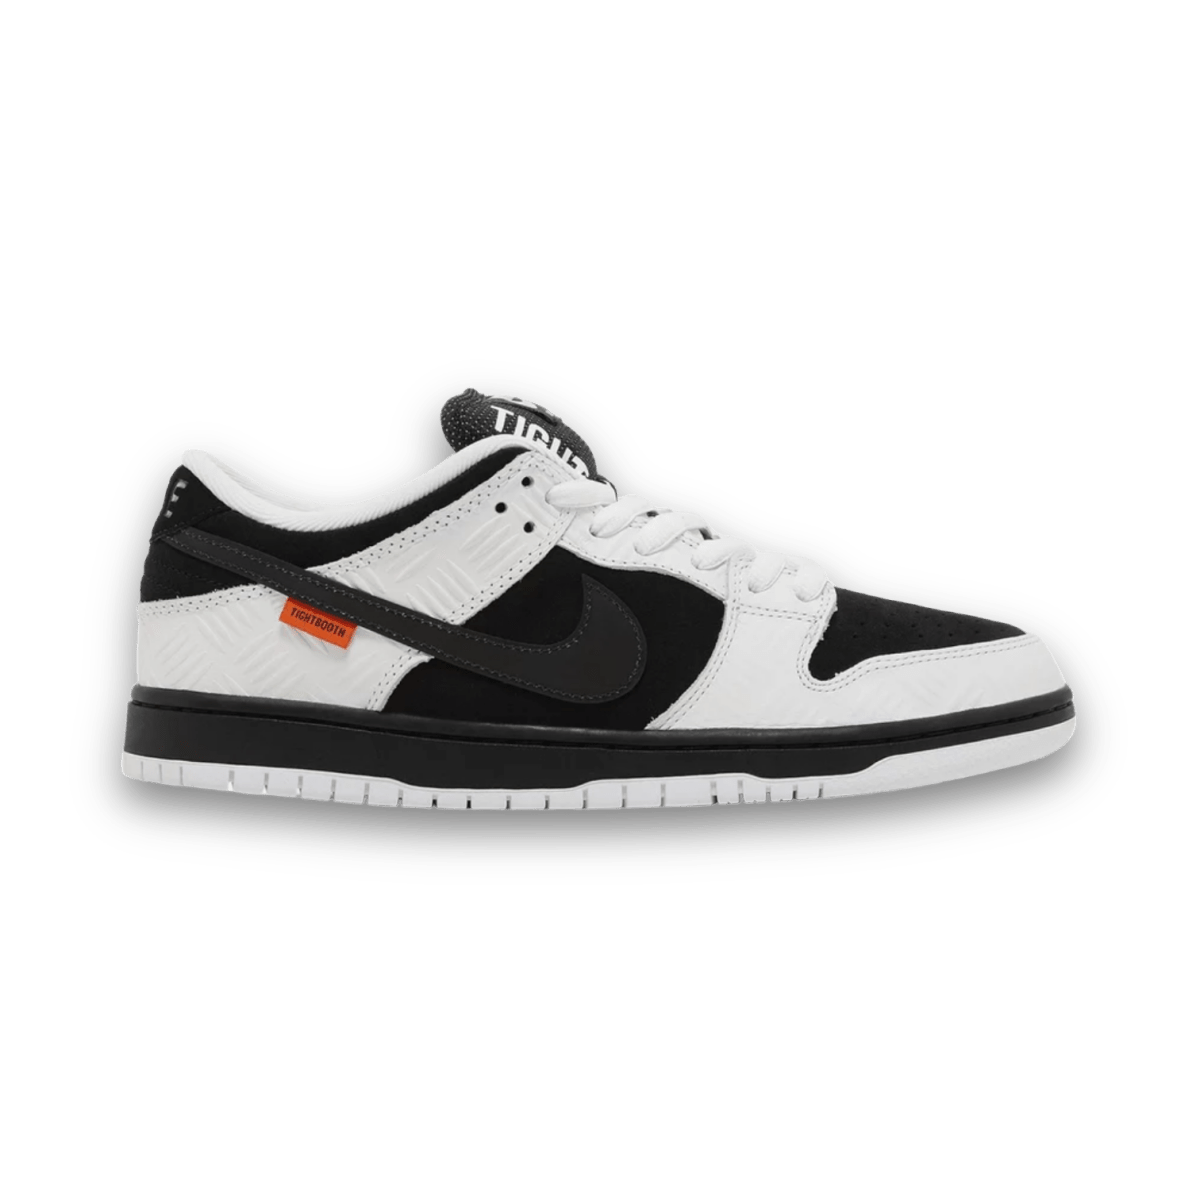 TIGHTBOOTH x Dunk Low SB - Low Sneaker - Jawns on Fire Sneakers & Streetwear